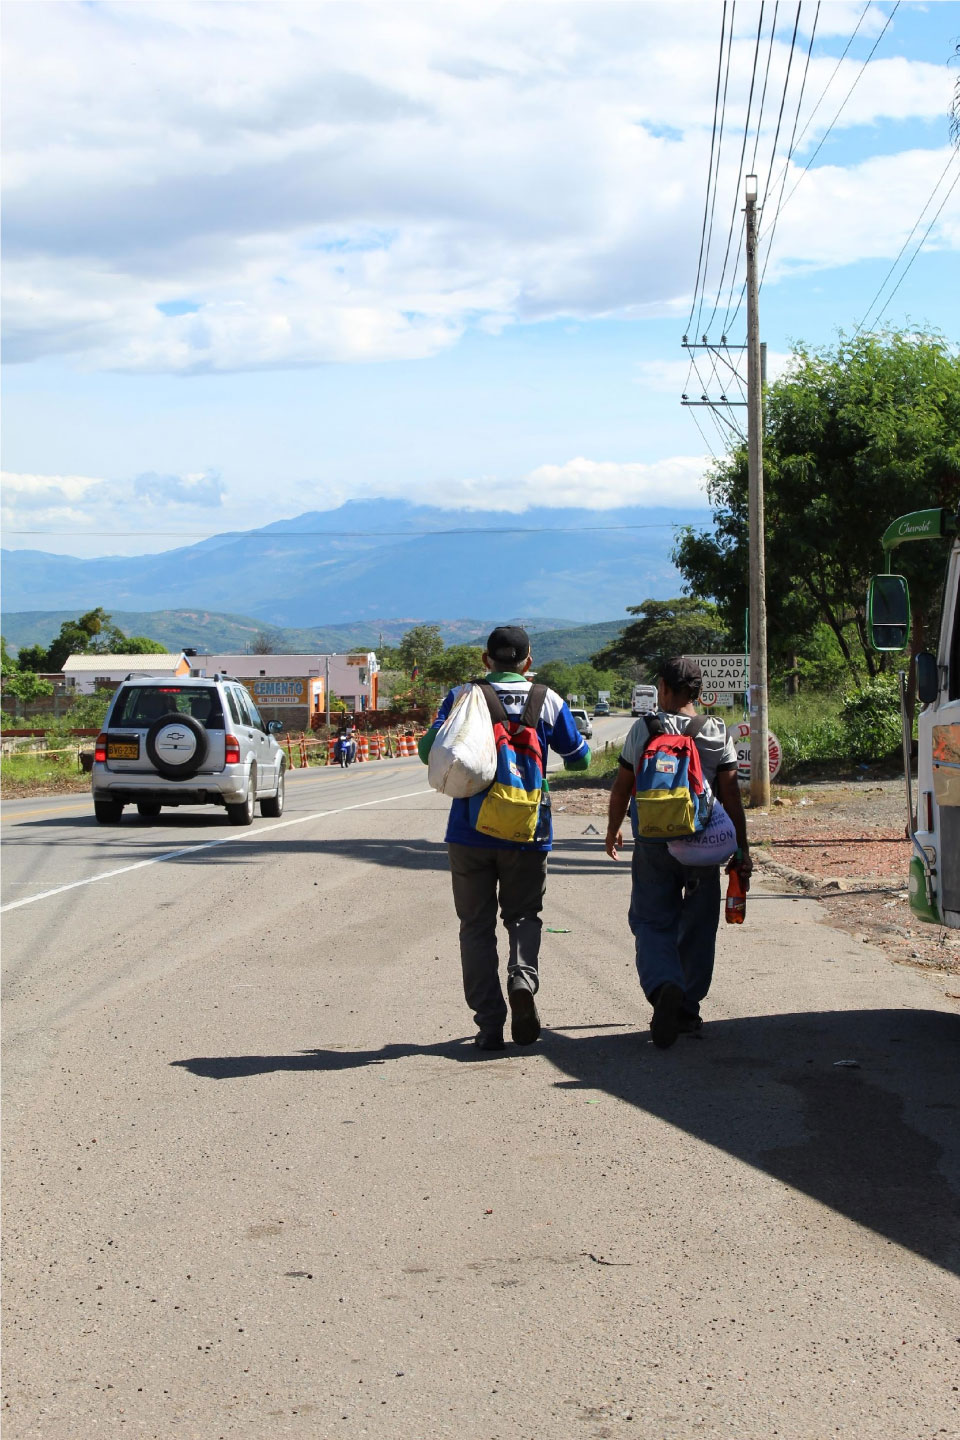 Migrantes en tránsito, Peaje los patios, Cúcuta